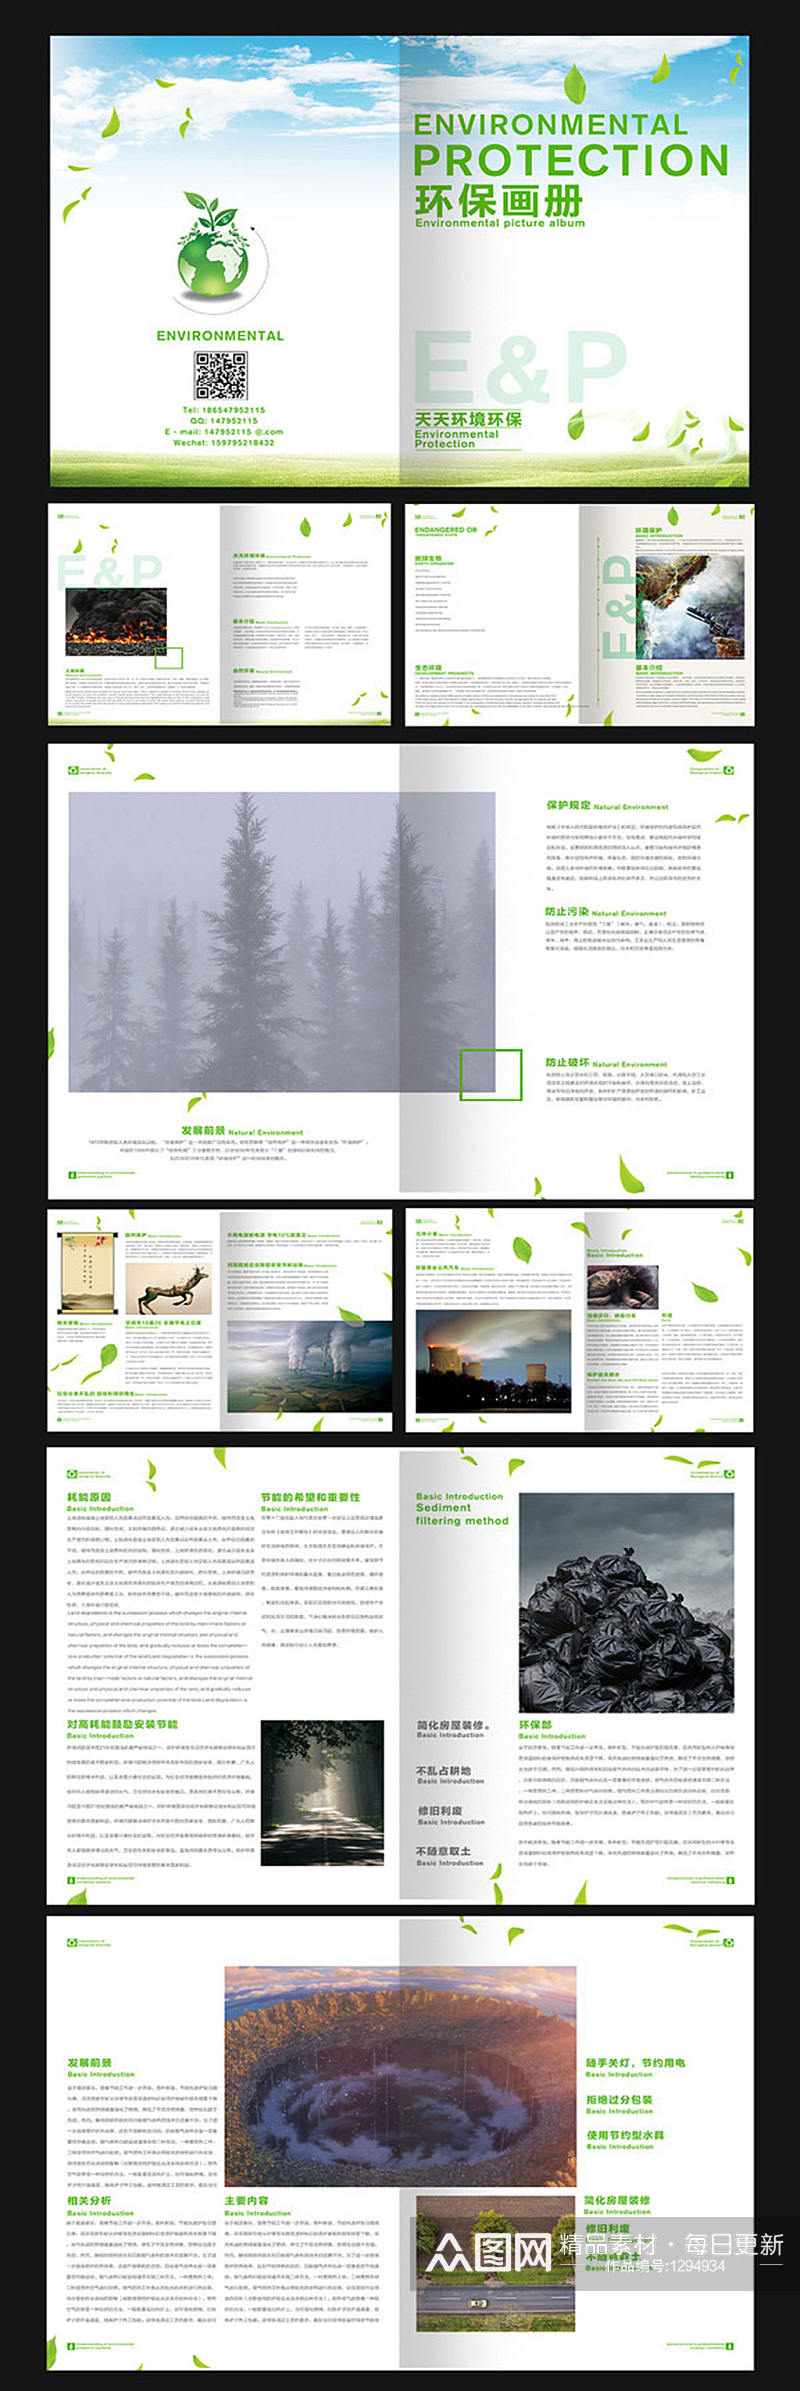 环保绿色画册设计素材